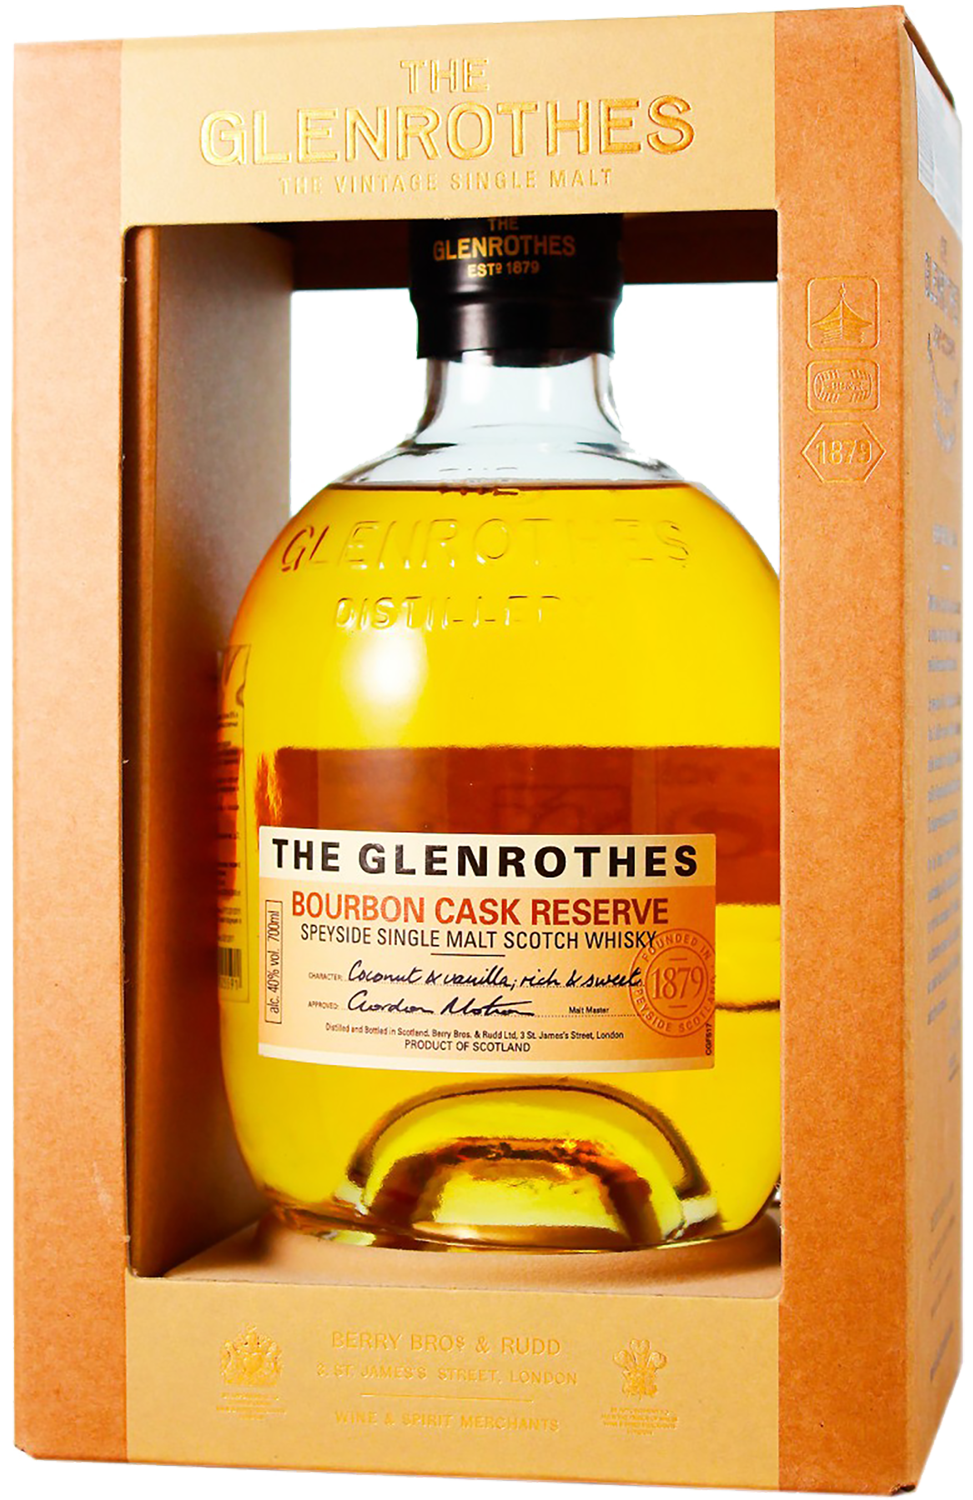 The Glenrothes Bourbon Cask Reserve Speyside Single Malt Scotch Whisky (gift box) tomintoul 1977 speyside glenlivet vintage single cask single malt scotch whisky gift box